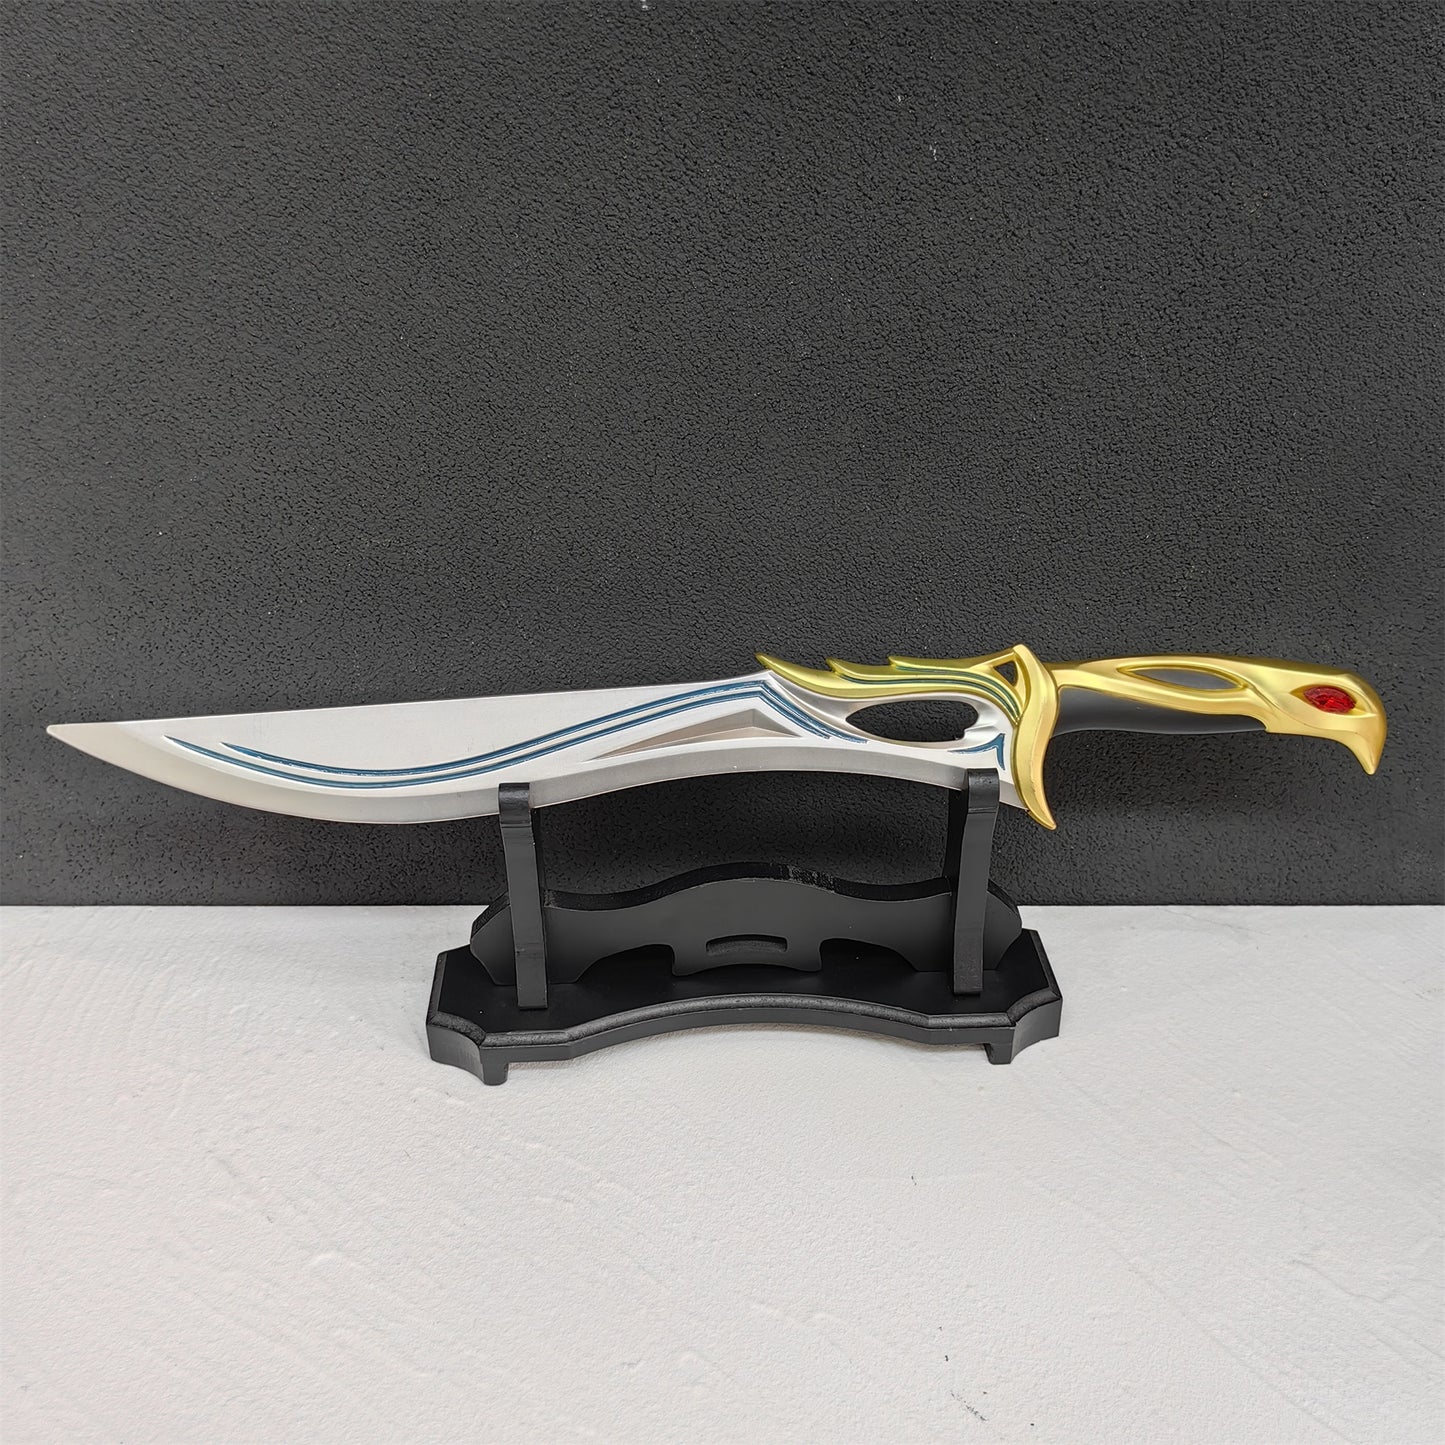 Luminous Sovereign Knife RGX Blade Reaver Dagger Jett Kunai 4 In 1 Pack